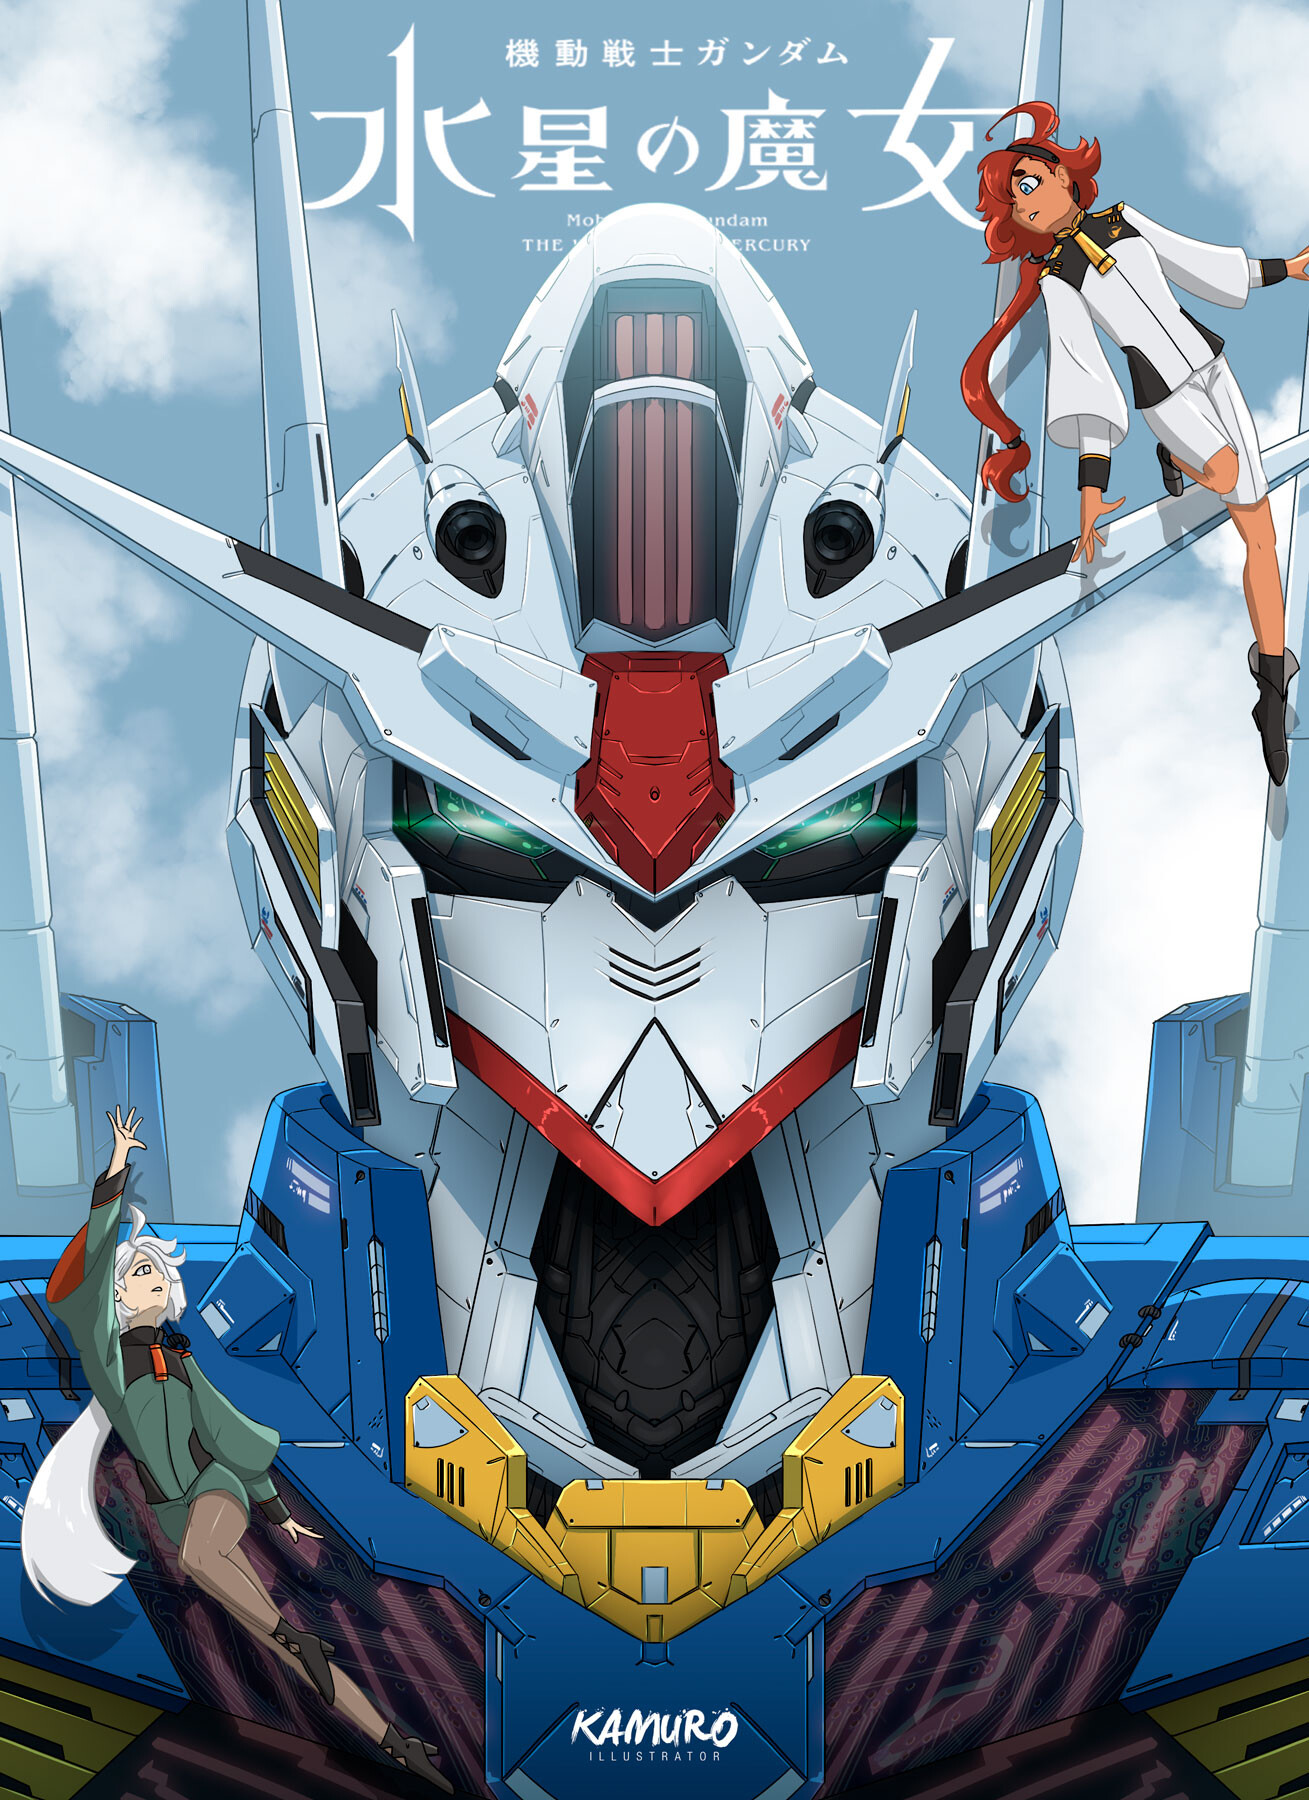 ArtStation - Gundam Aerial